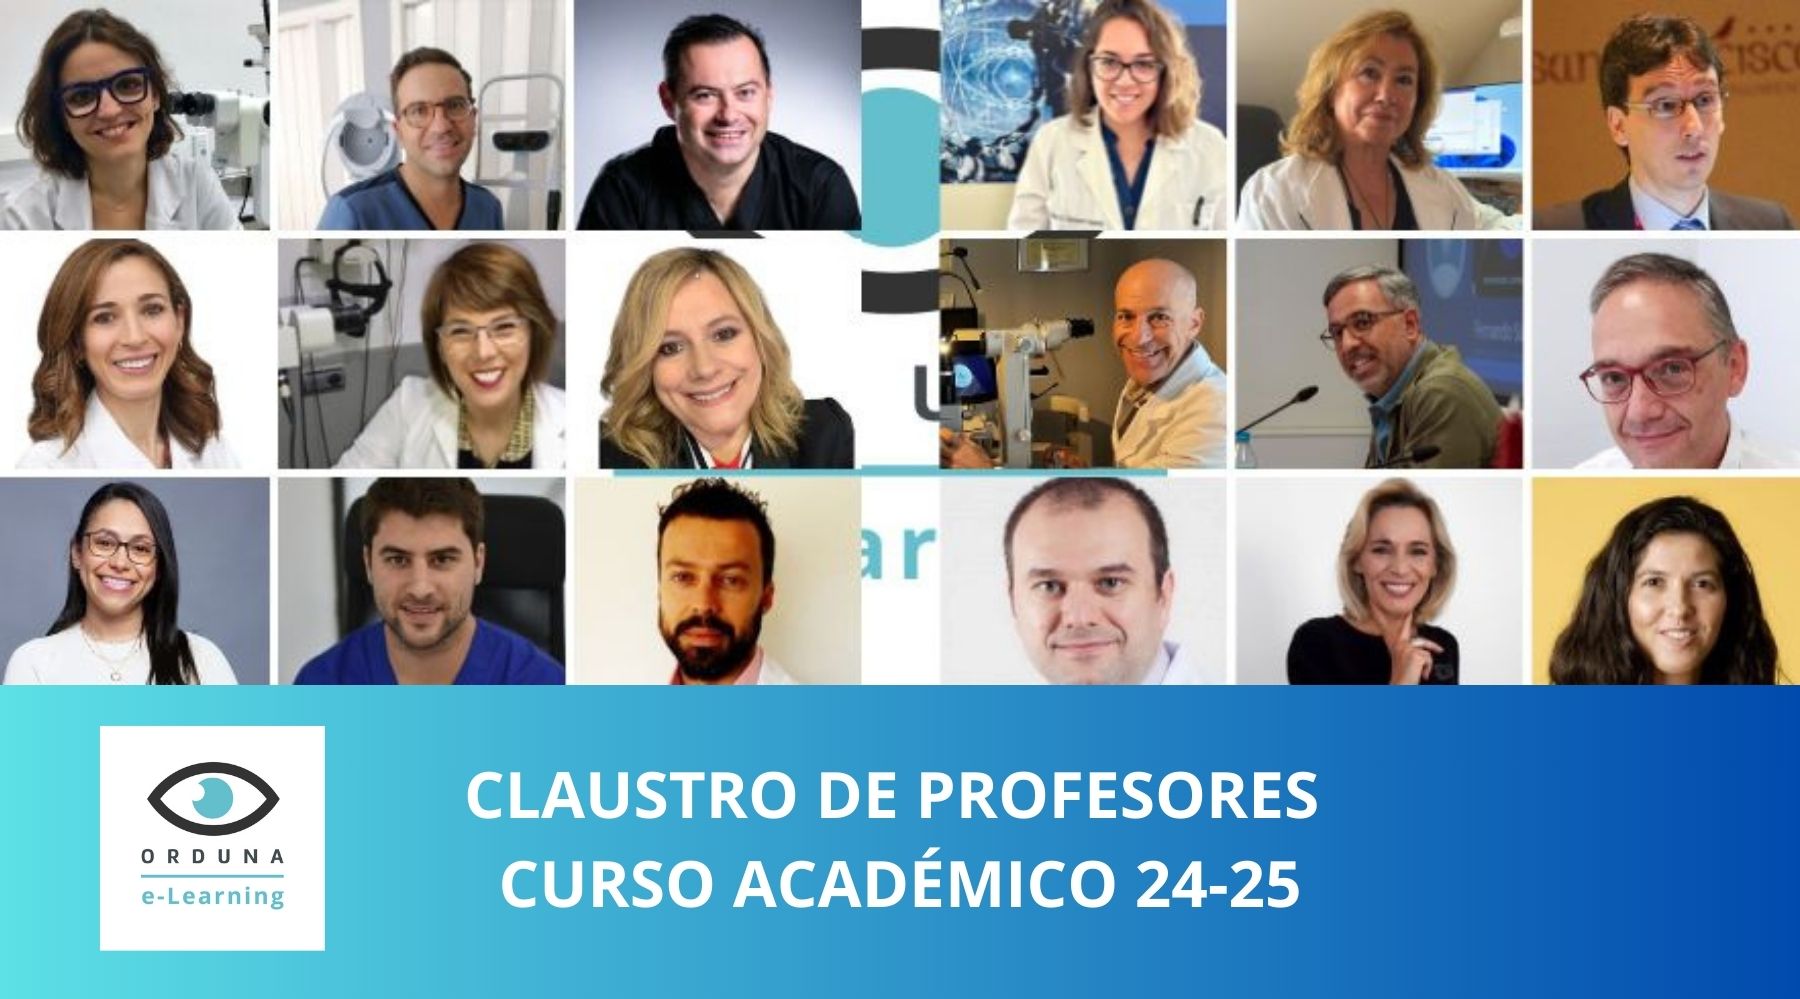 CLAUSTRO DE PROFESORES CURSO ACADÉMICO 24-25